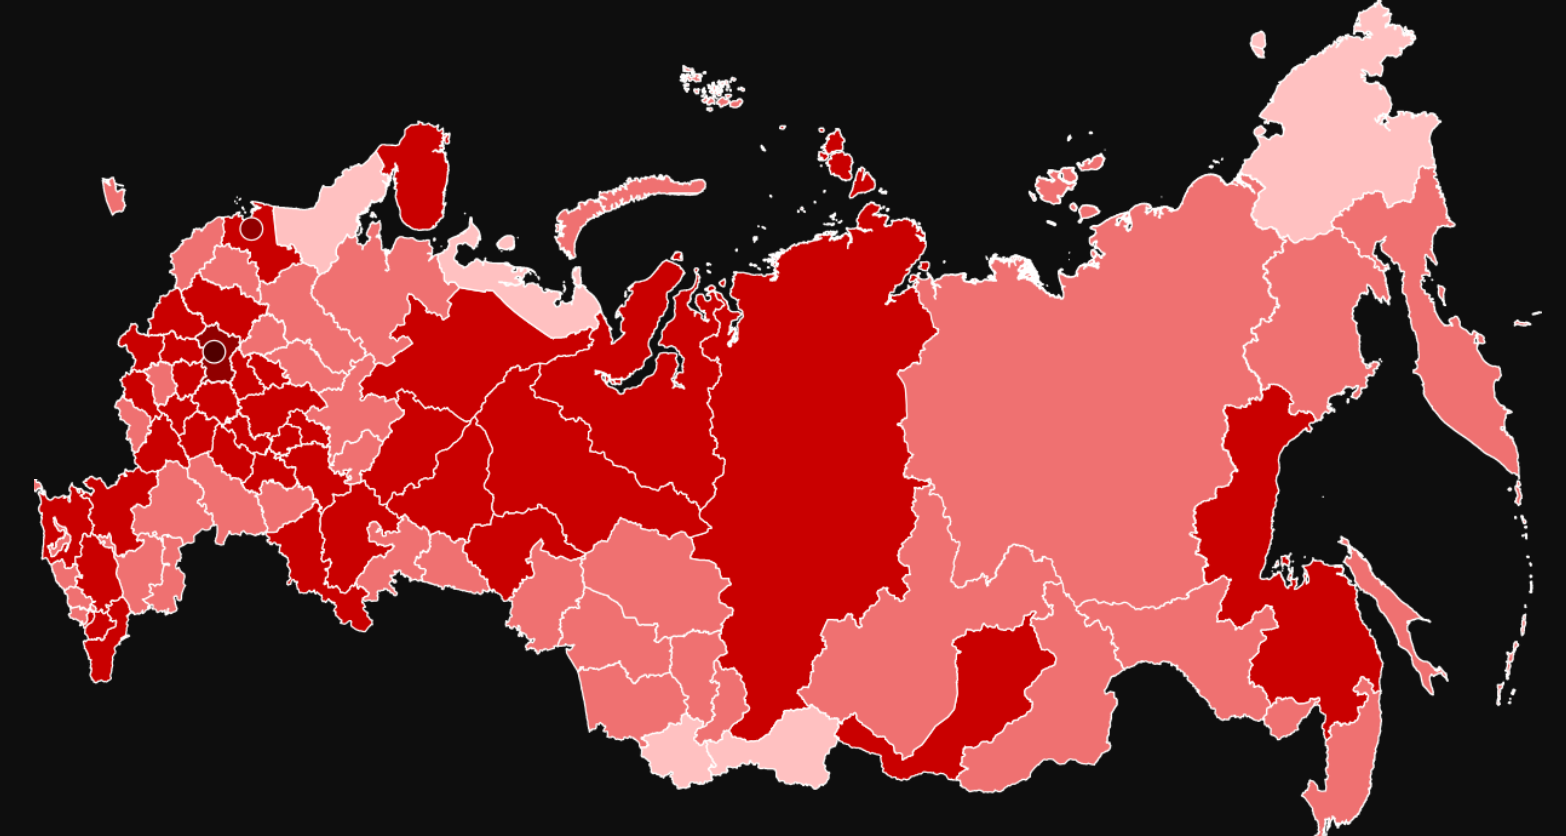 Коронавирус распространяется по России: число инфицированных превысило 317 000 - ситуация в Москве сложная